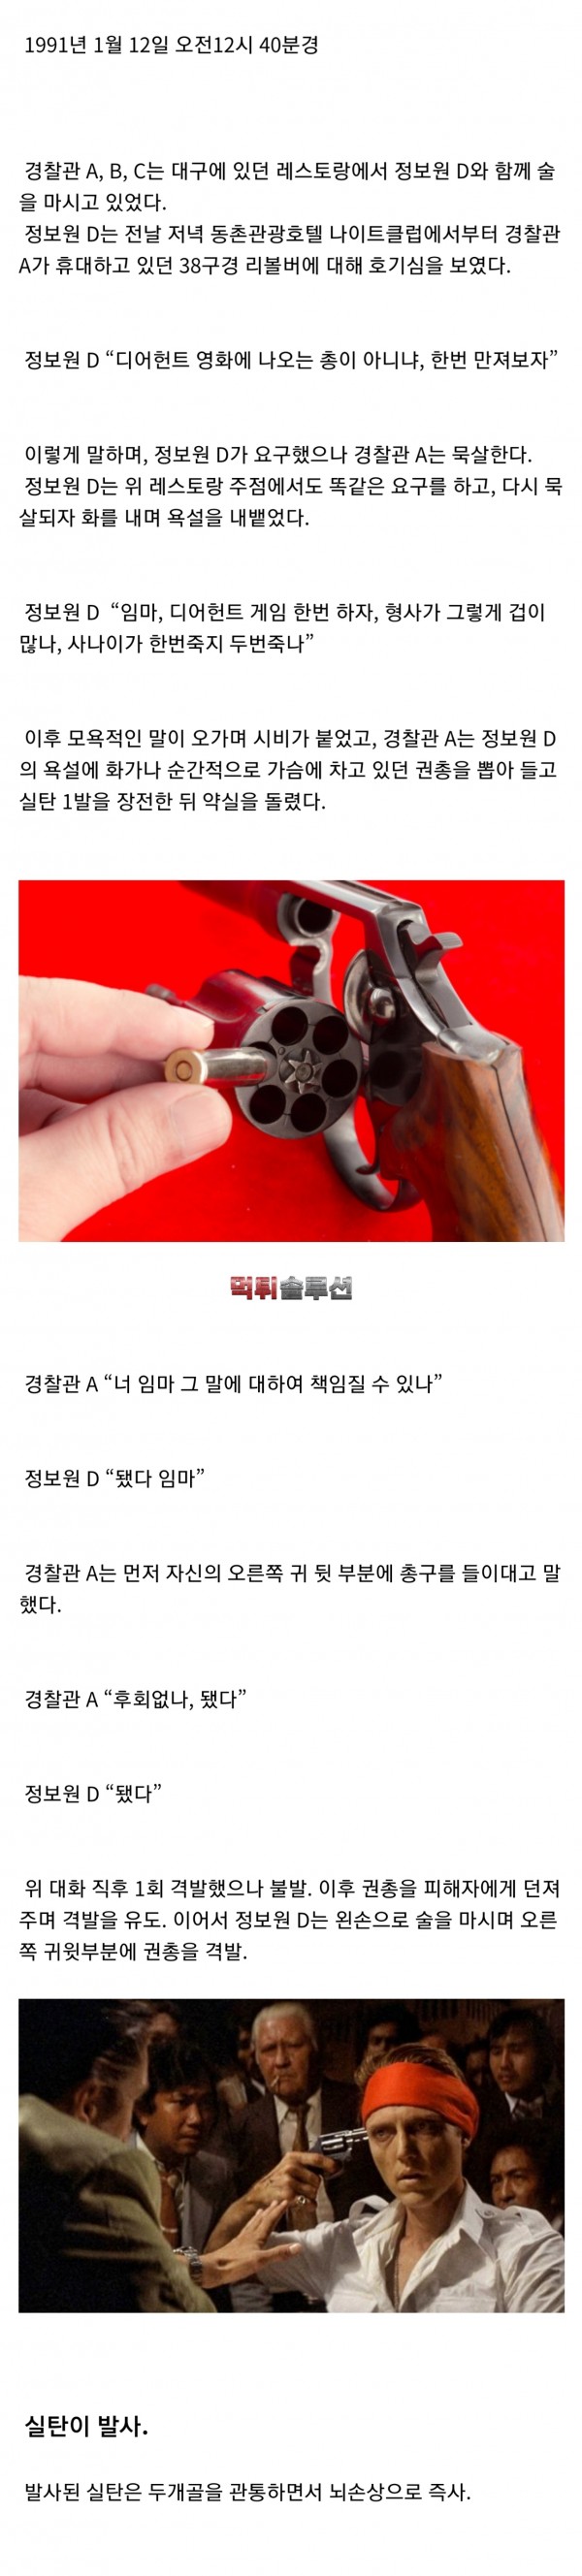 한국에서 실제로 벌어진 러시안룰렛 사망사건